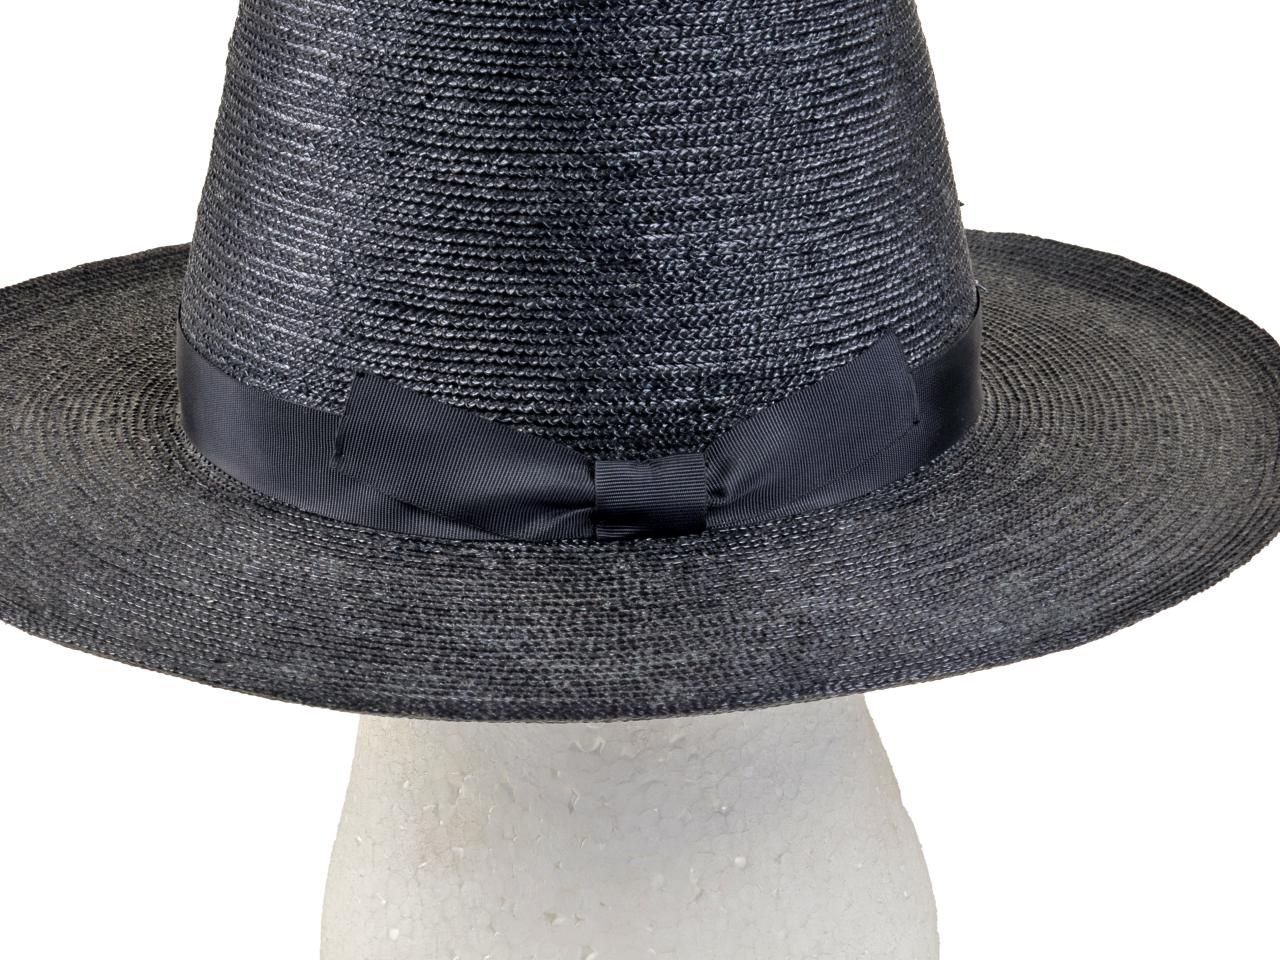 Detalle de ala y ornamentación de sombrero tipo Rugendas, tejido en paja teatina teñida con anilinas